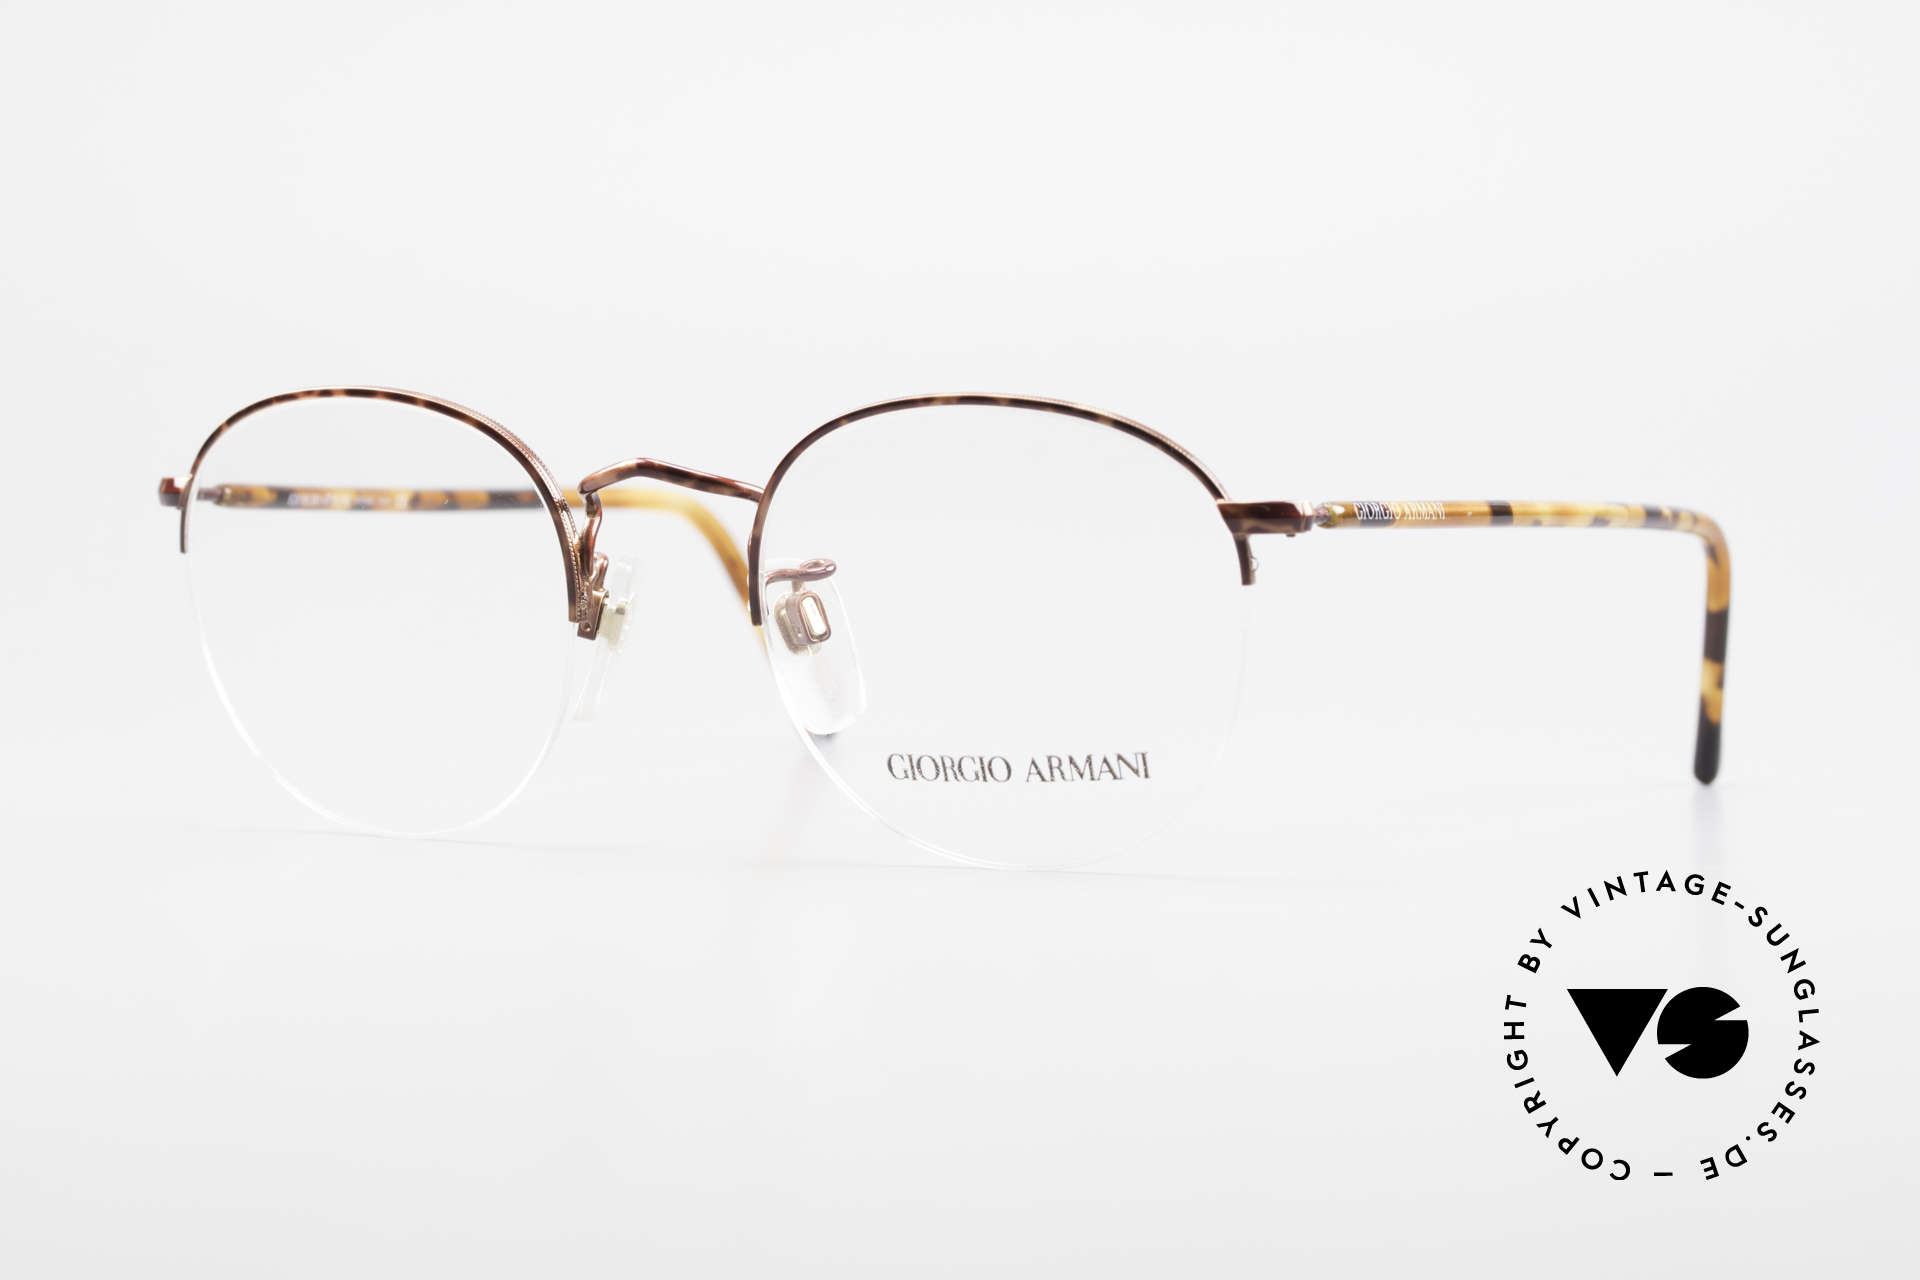 Giorgio Armani 142 Rimless Panto Glasses Small, timeless GIORGIO ARMANI vintage designer glasses, Made for Men and Women